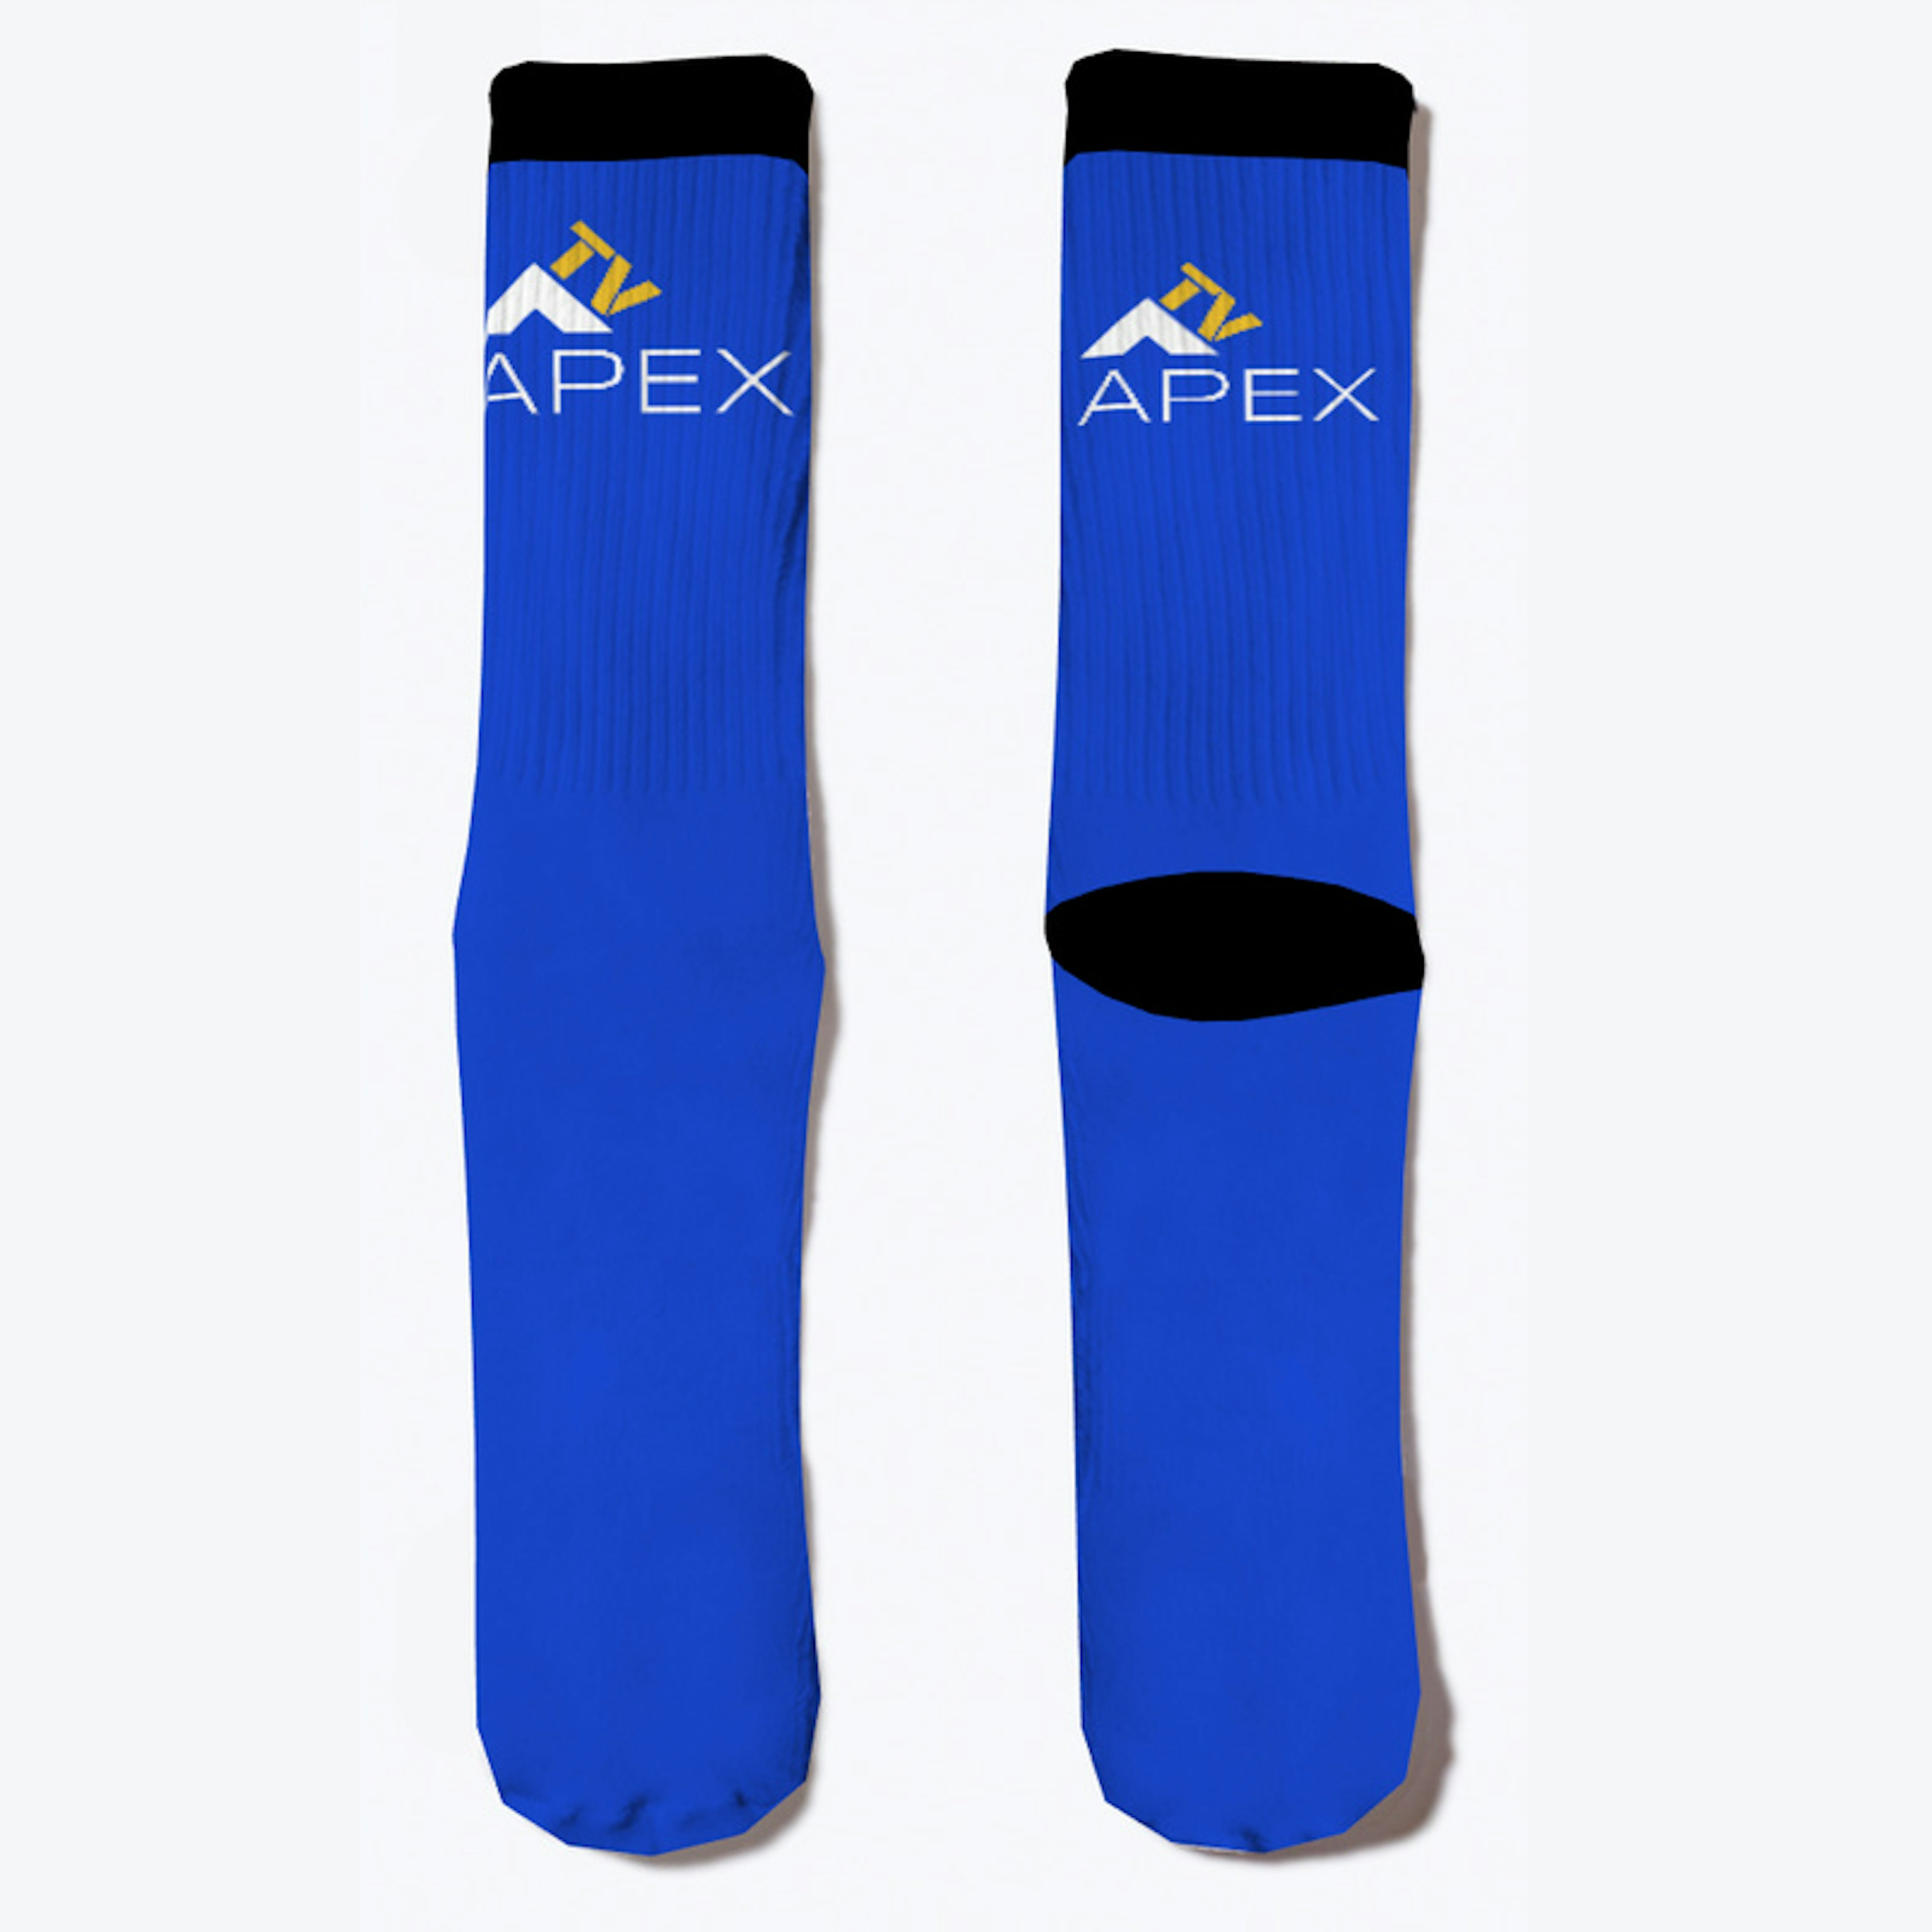 ApexTV Socks